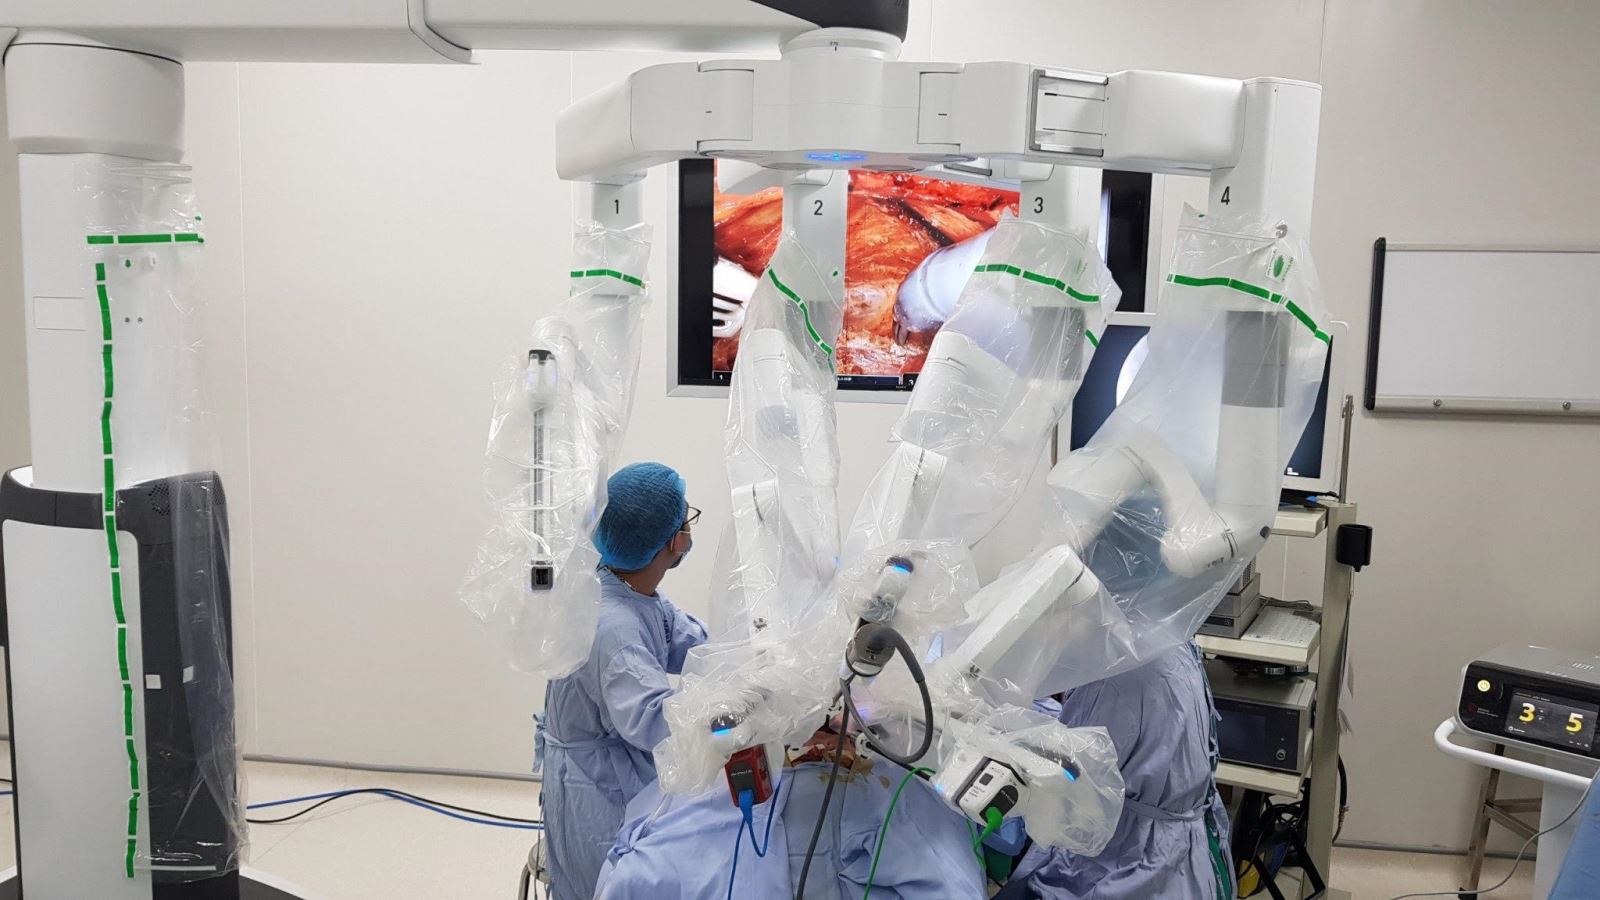 Phương pháp phẫu thuật robot có nhiều ưu điểm vượt trội: đảm bảo thẩm mỹ, sang chấn tối thiểu, không chảy máu, giảm đau tối đa và phục hồi nhanh chóng.